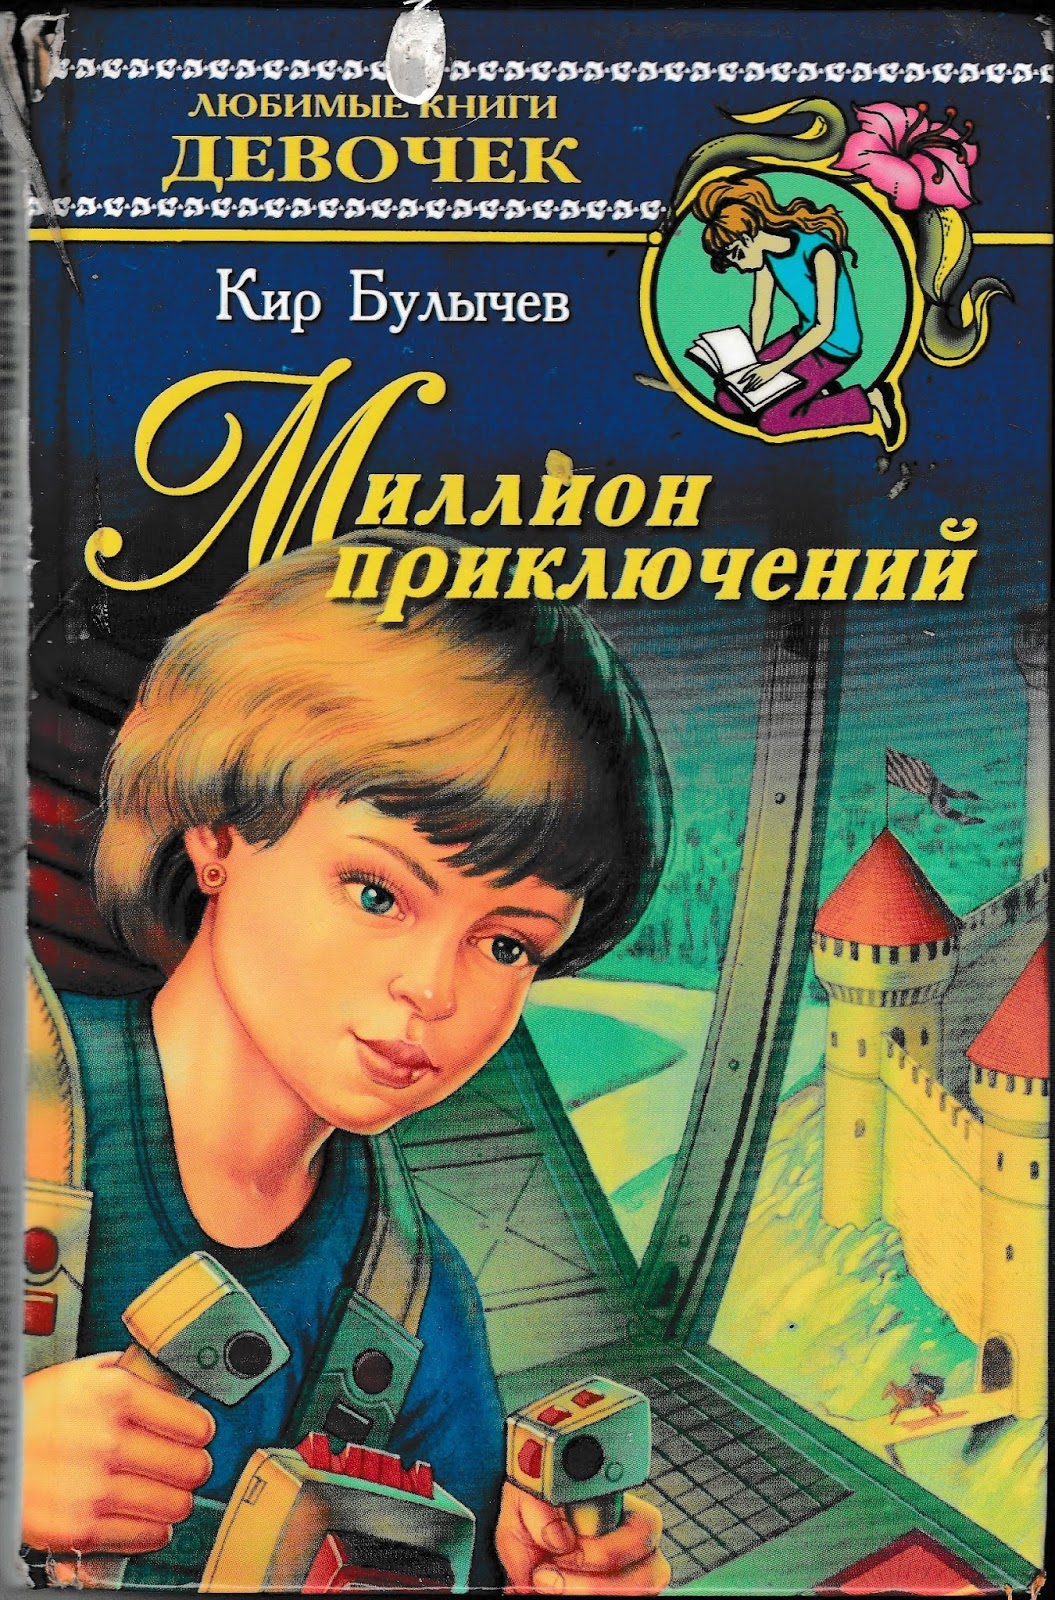 Рассказ миллион приключений читать. Фантастические произведения для детей. Детские книги приключения.